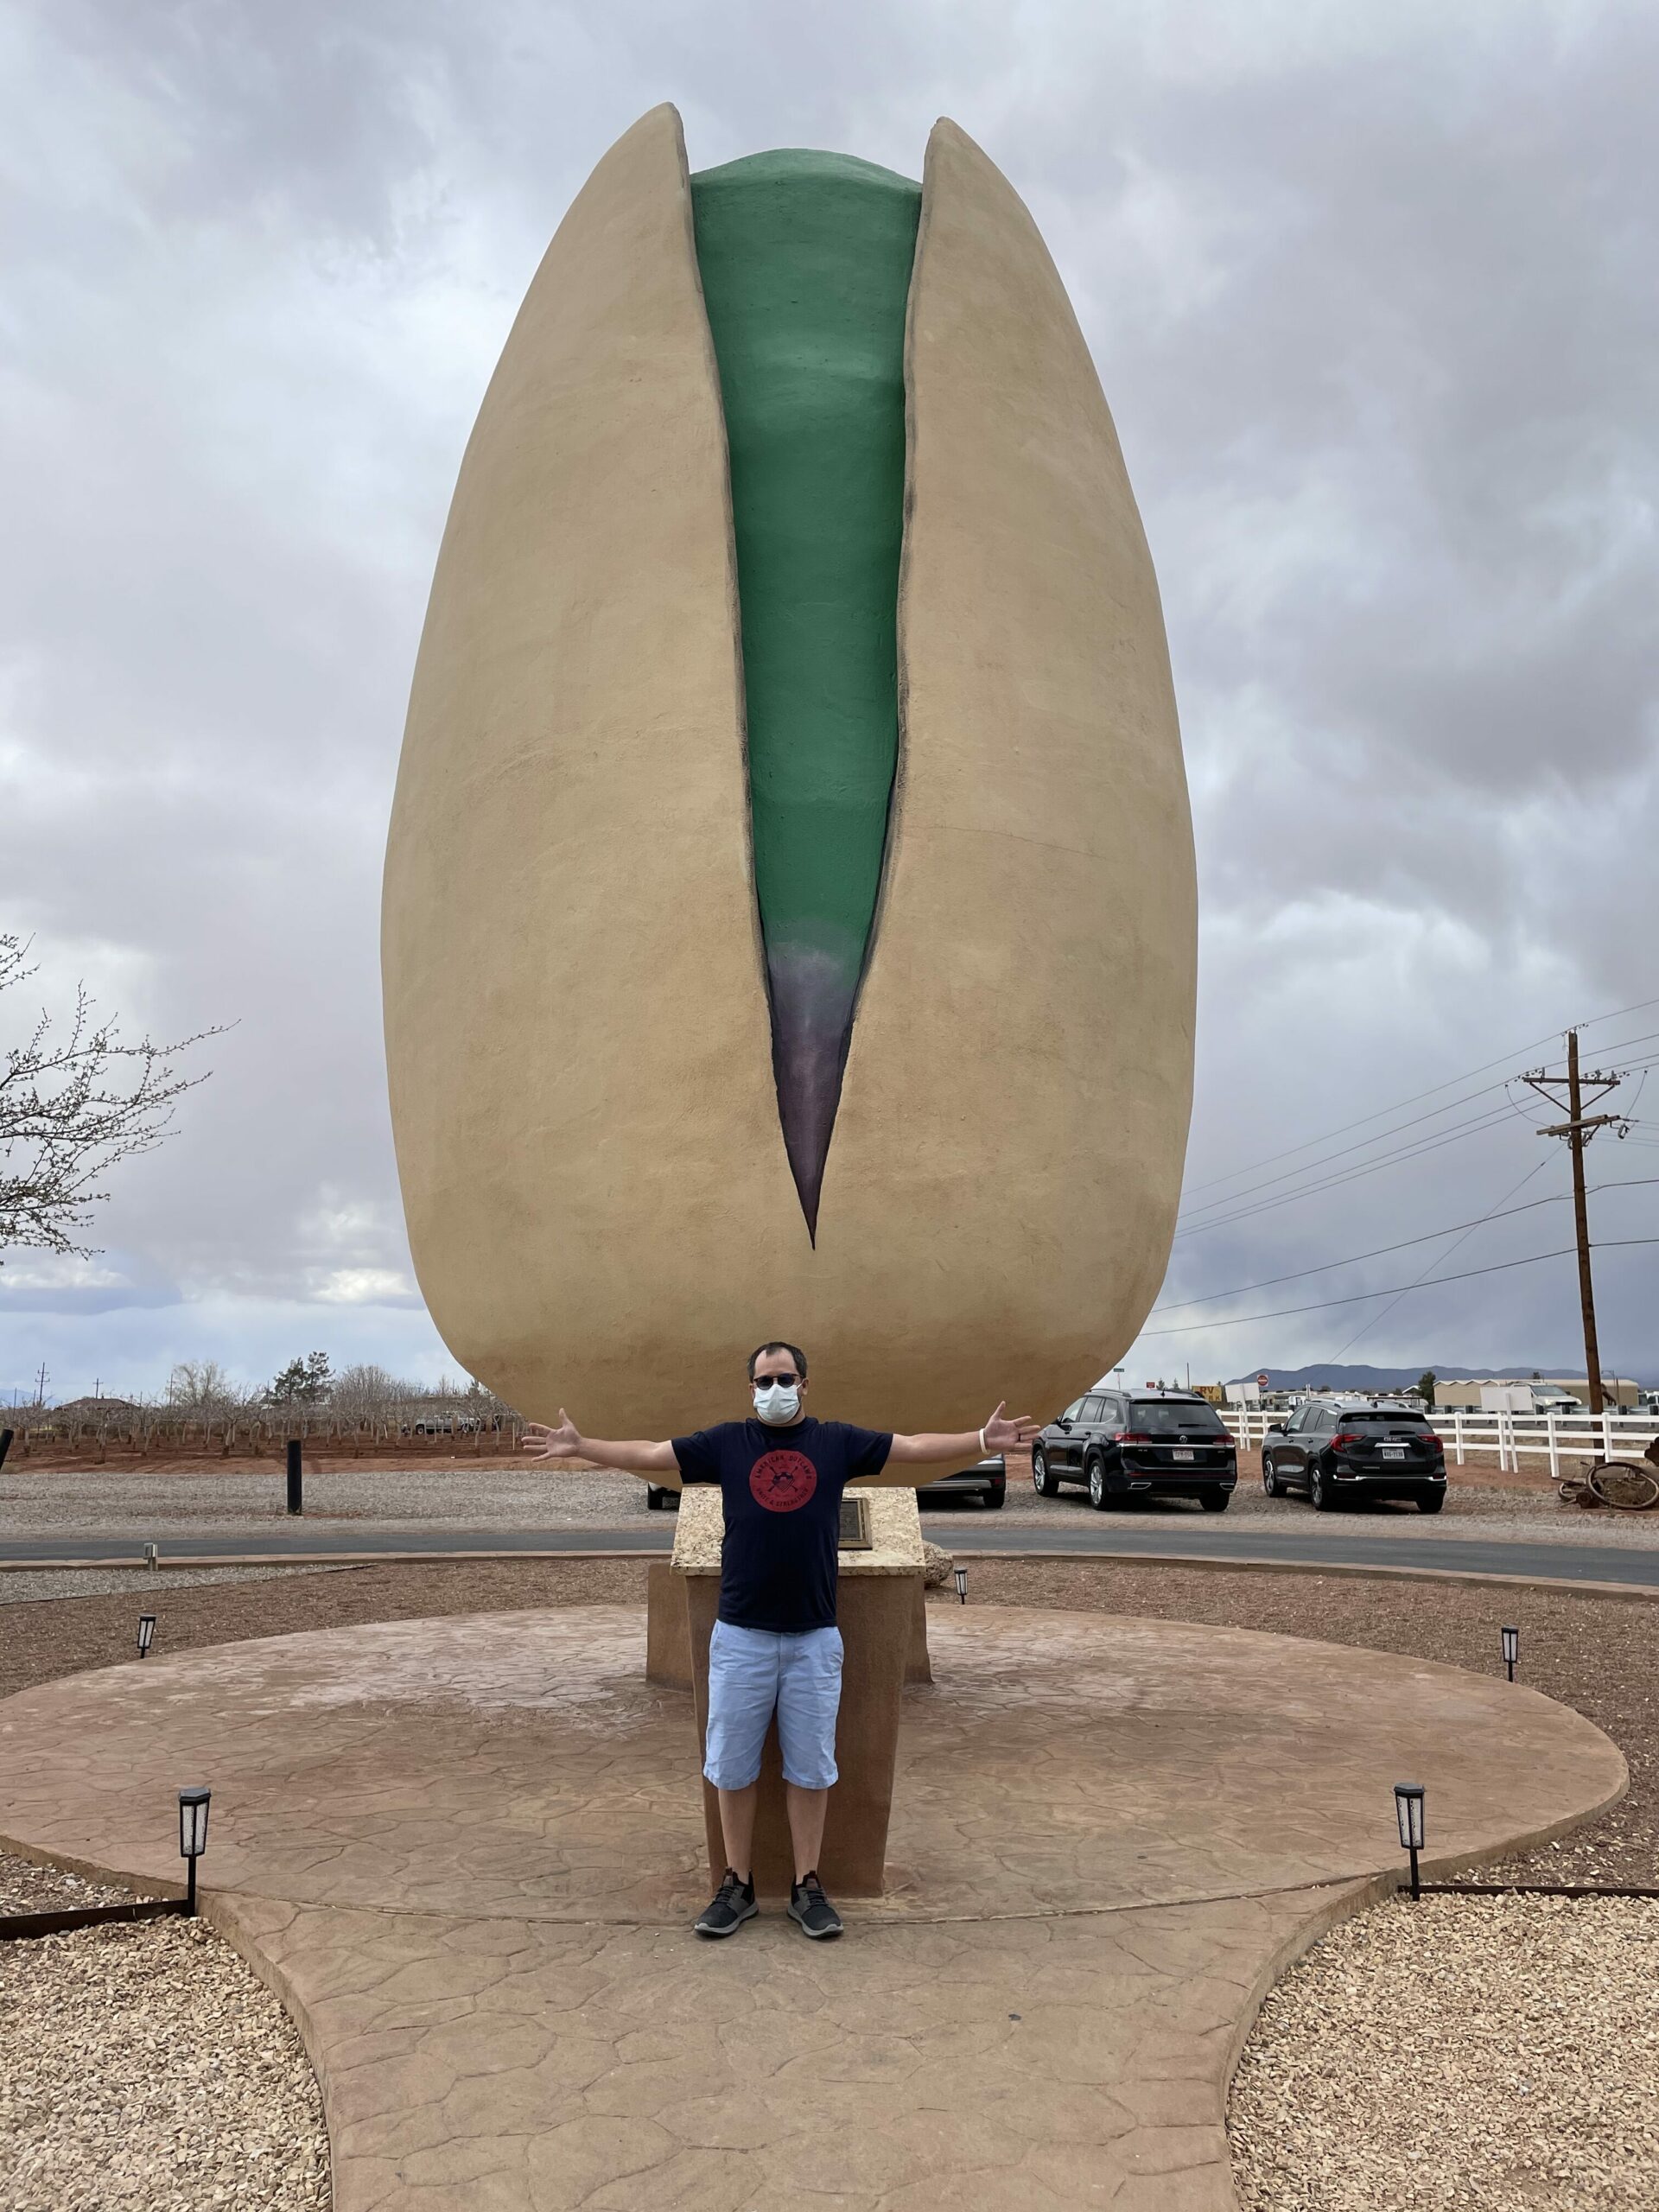 Mcginn's pistachioland home of the world's largest pistachio